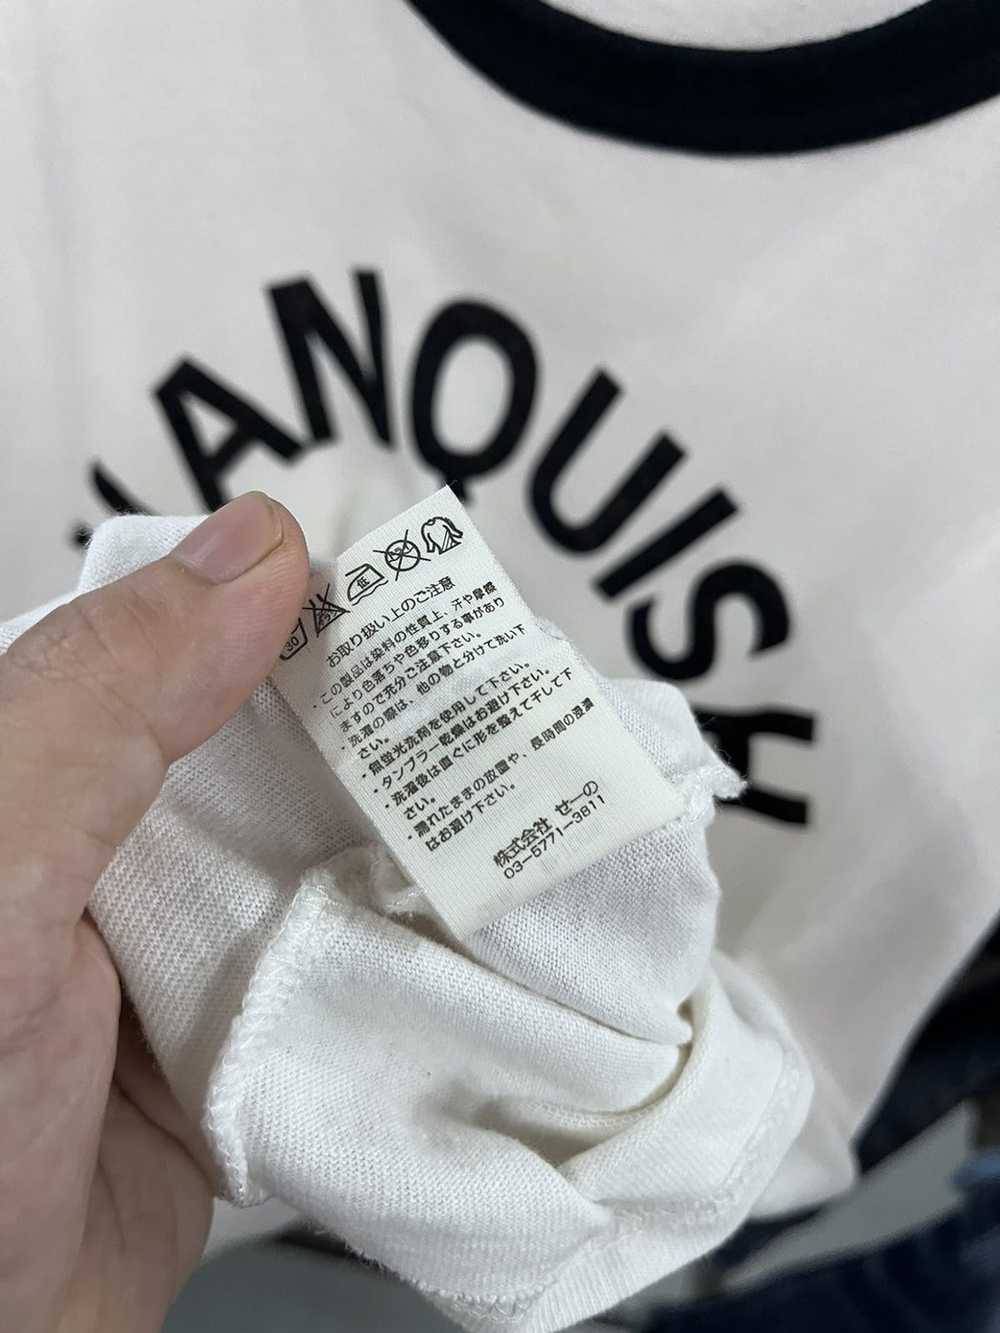 Japanese Brand × Vanquish Vanquish Ringer Tshirt - image 7